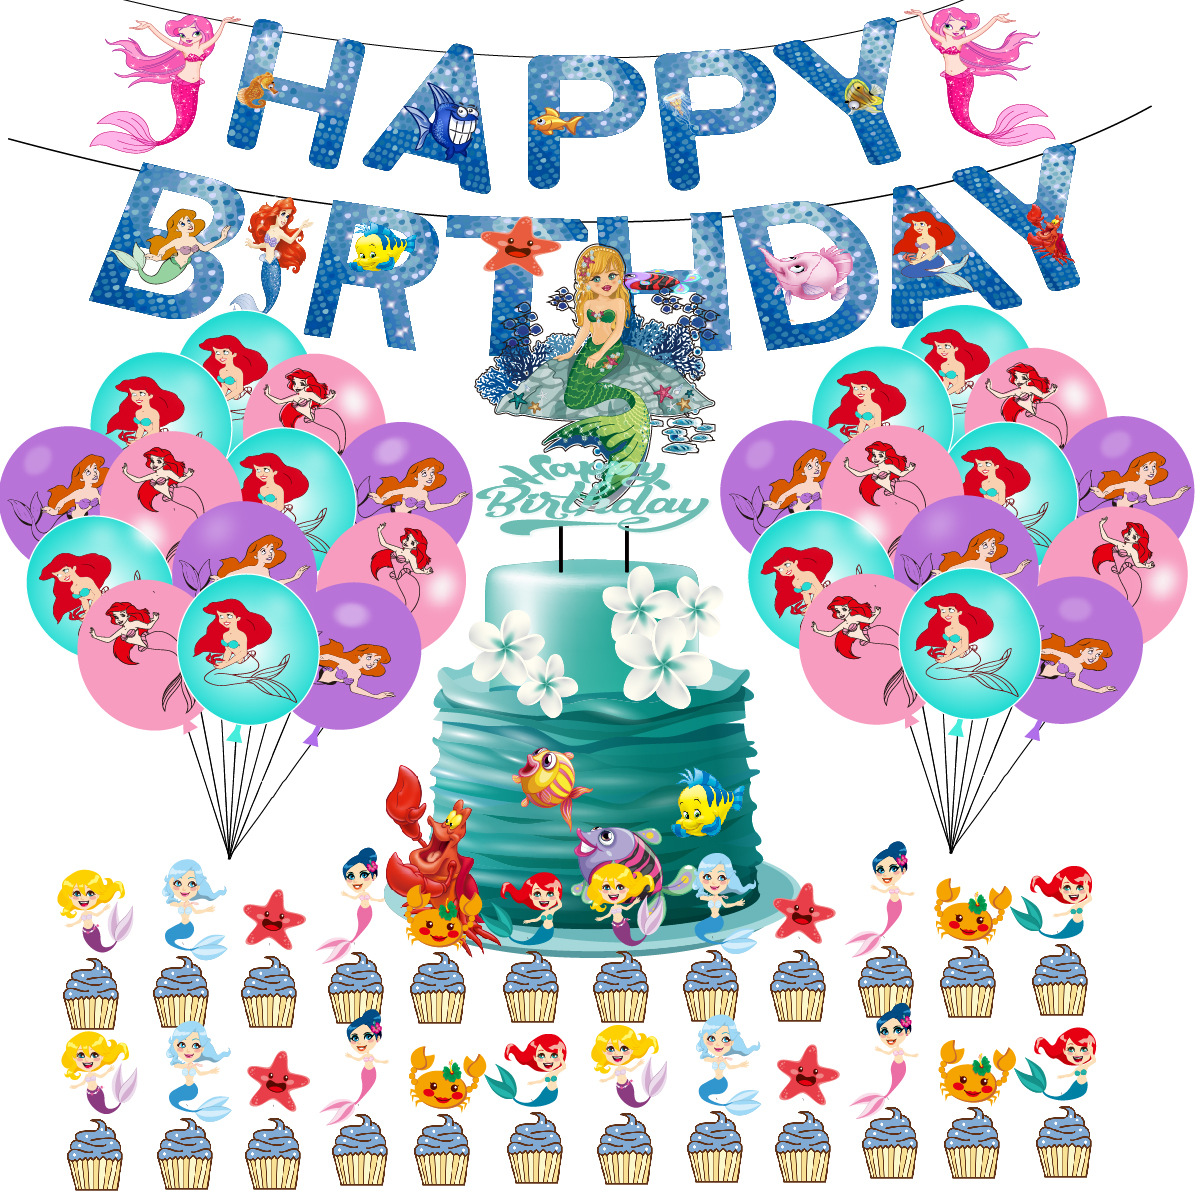 美人鱼主题生日派对装饰套装气球套装拉旗气球大小插排场景布置派对用品图